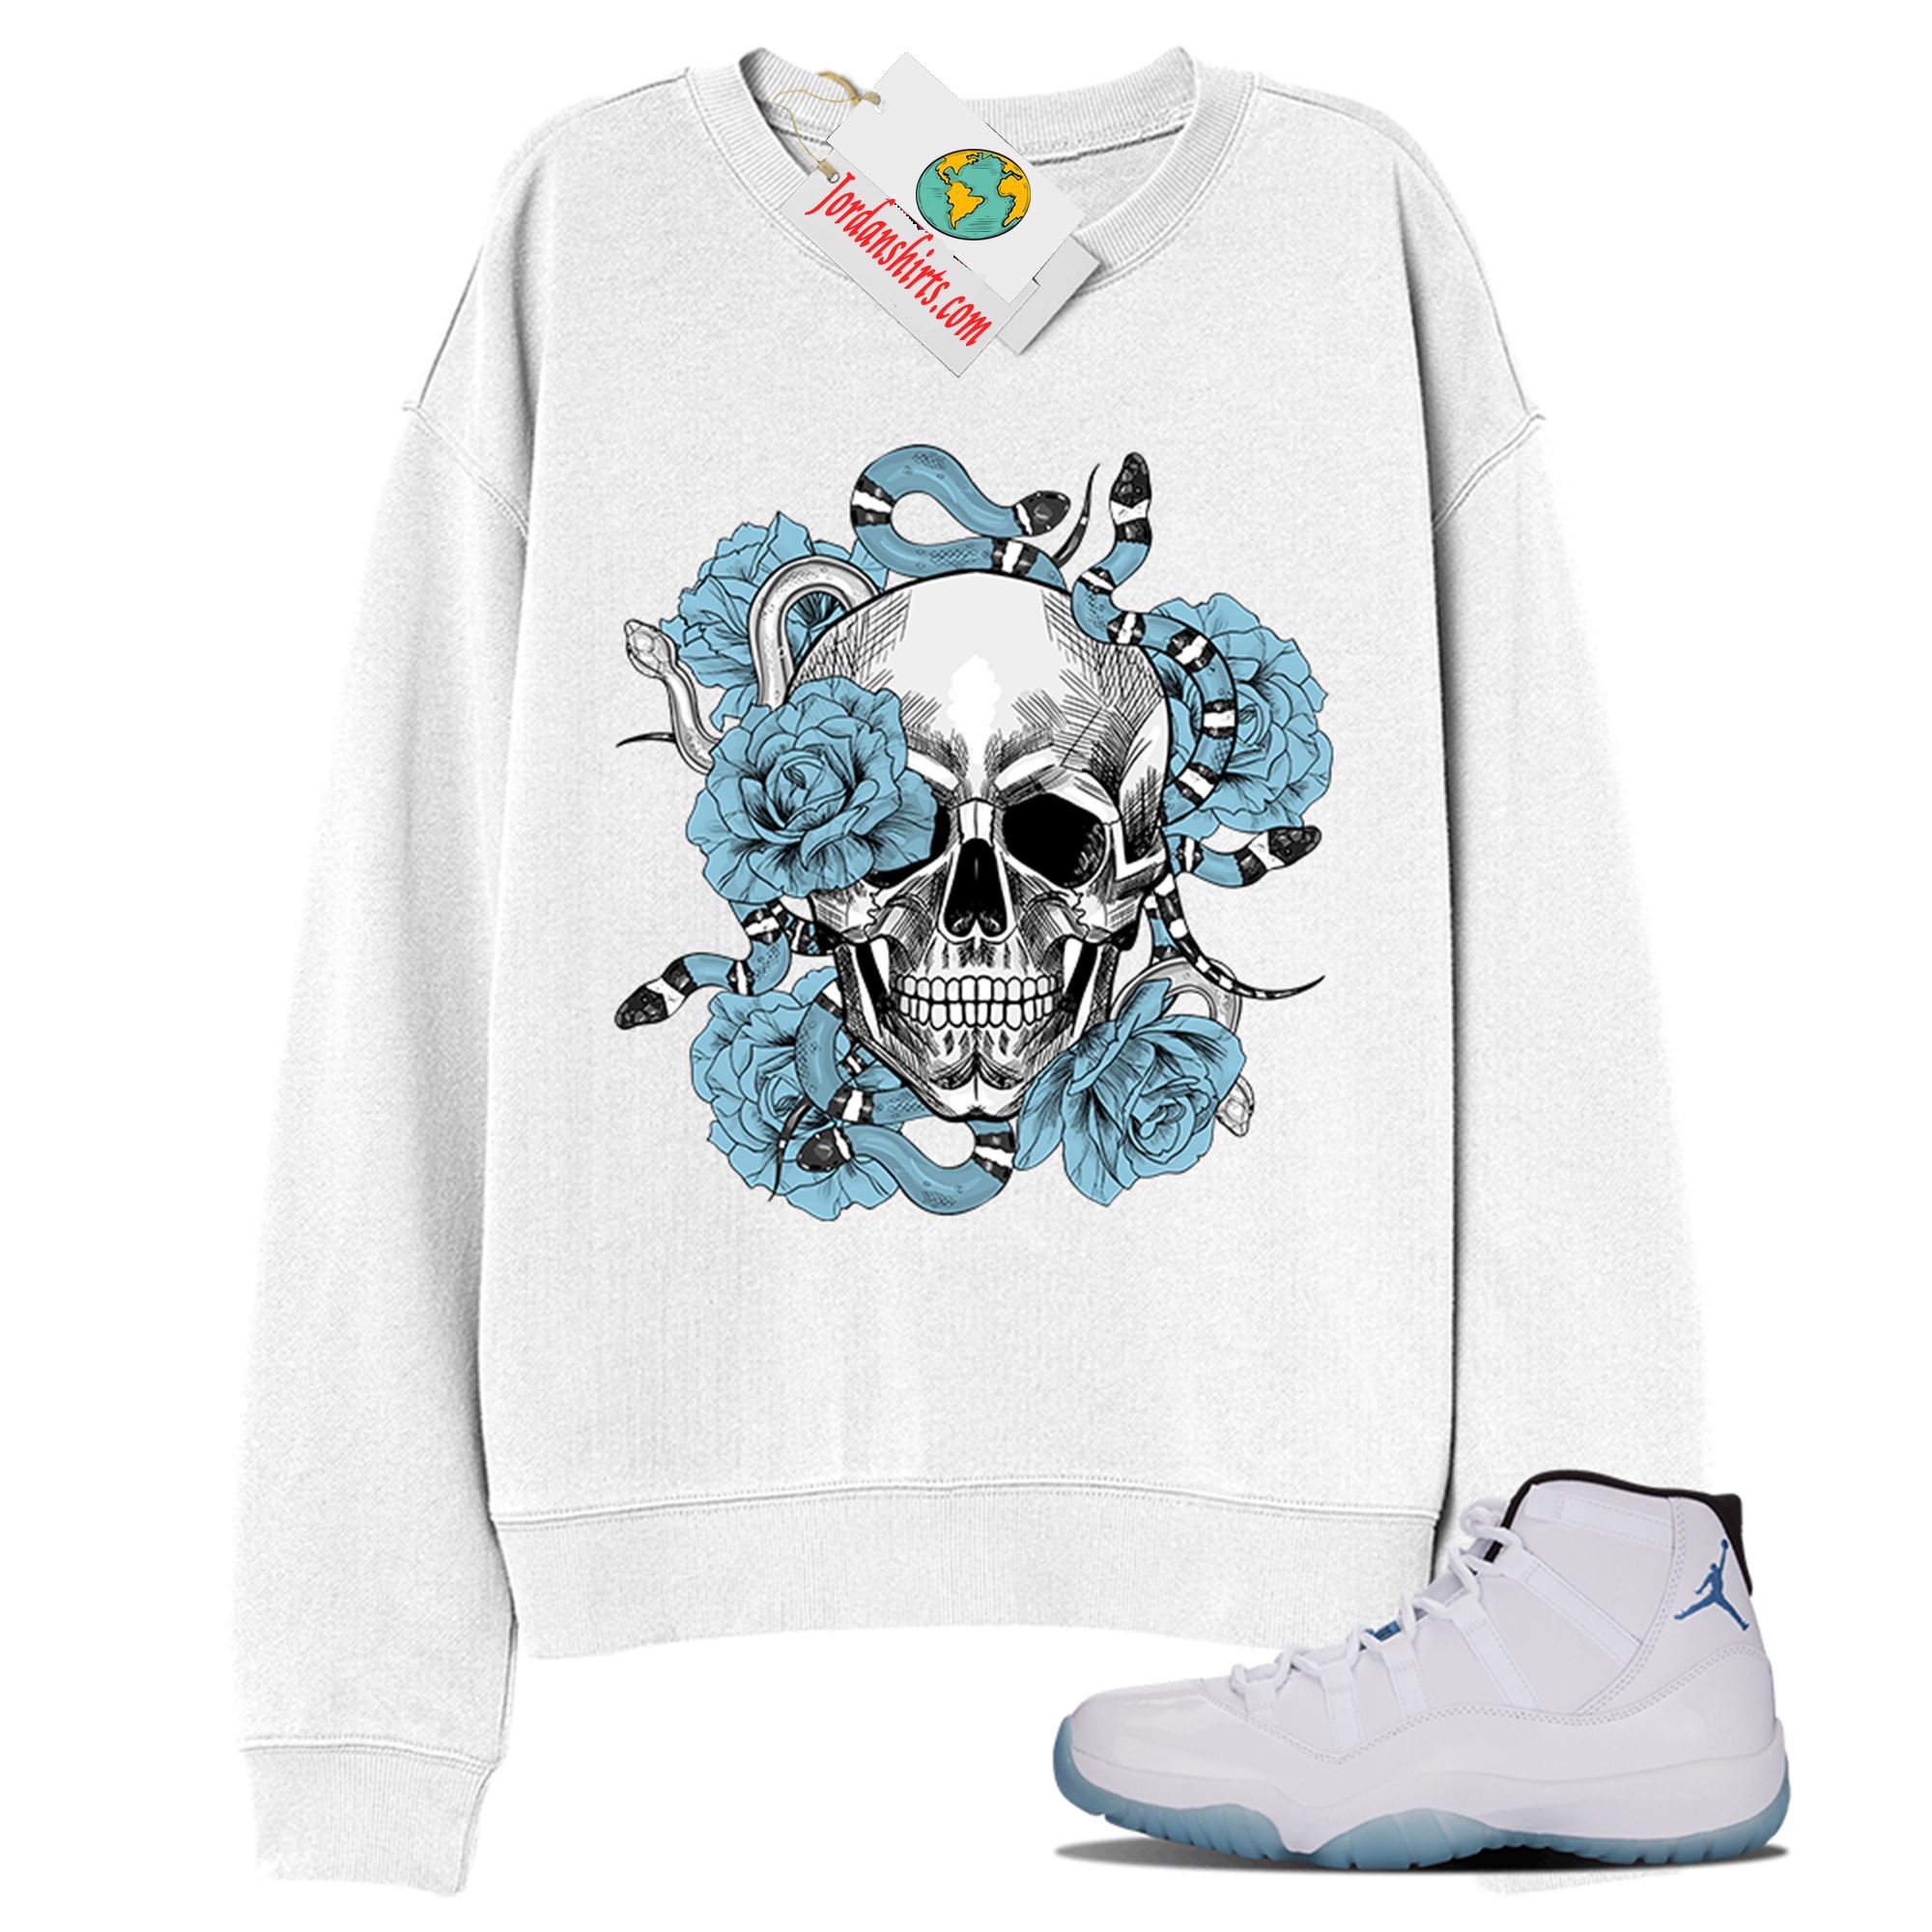 Jordan 11 Sweatshirt, Snake Skull Rose White Sweatshirt Air Jordan 11 Legend Blue 11s Plus Size Up To 5xl